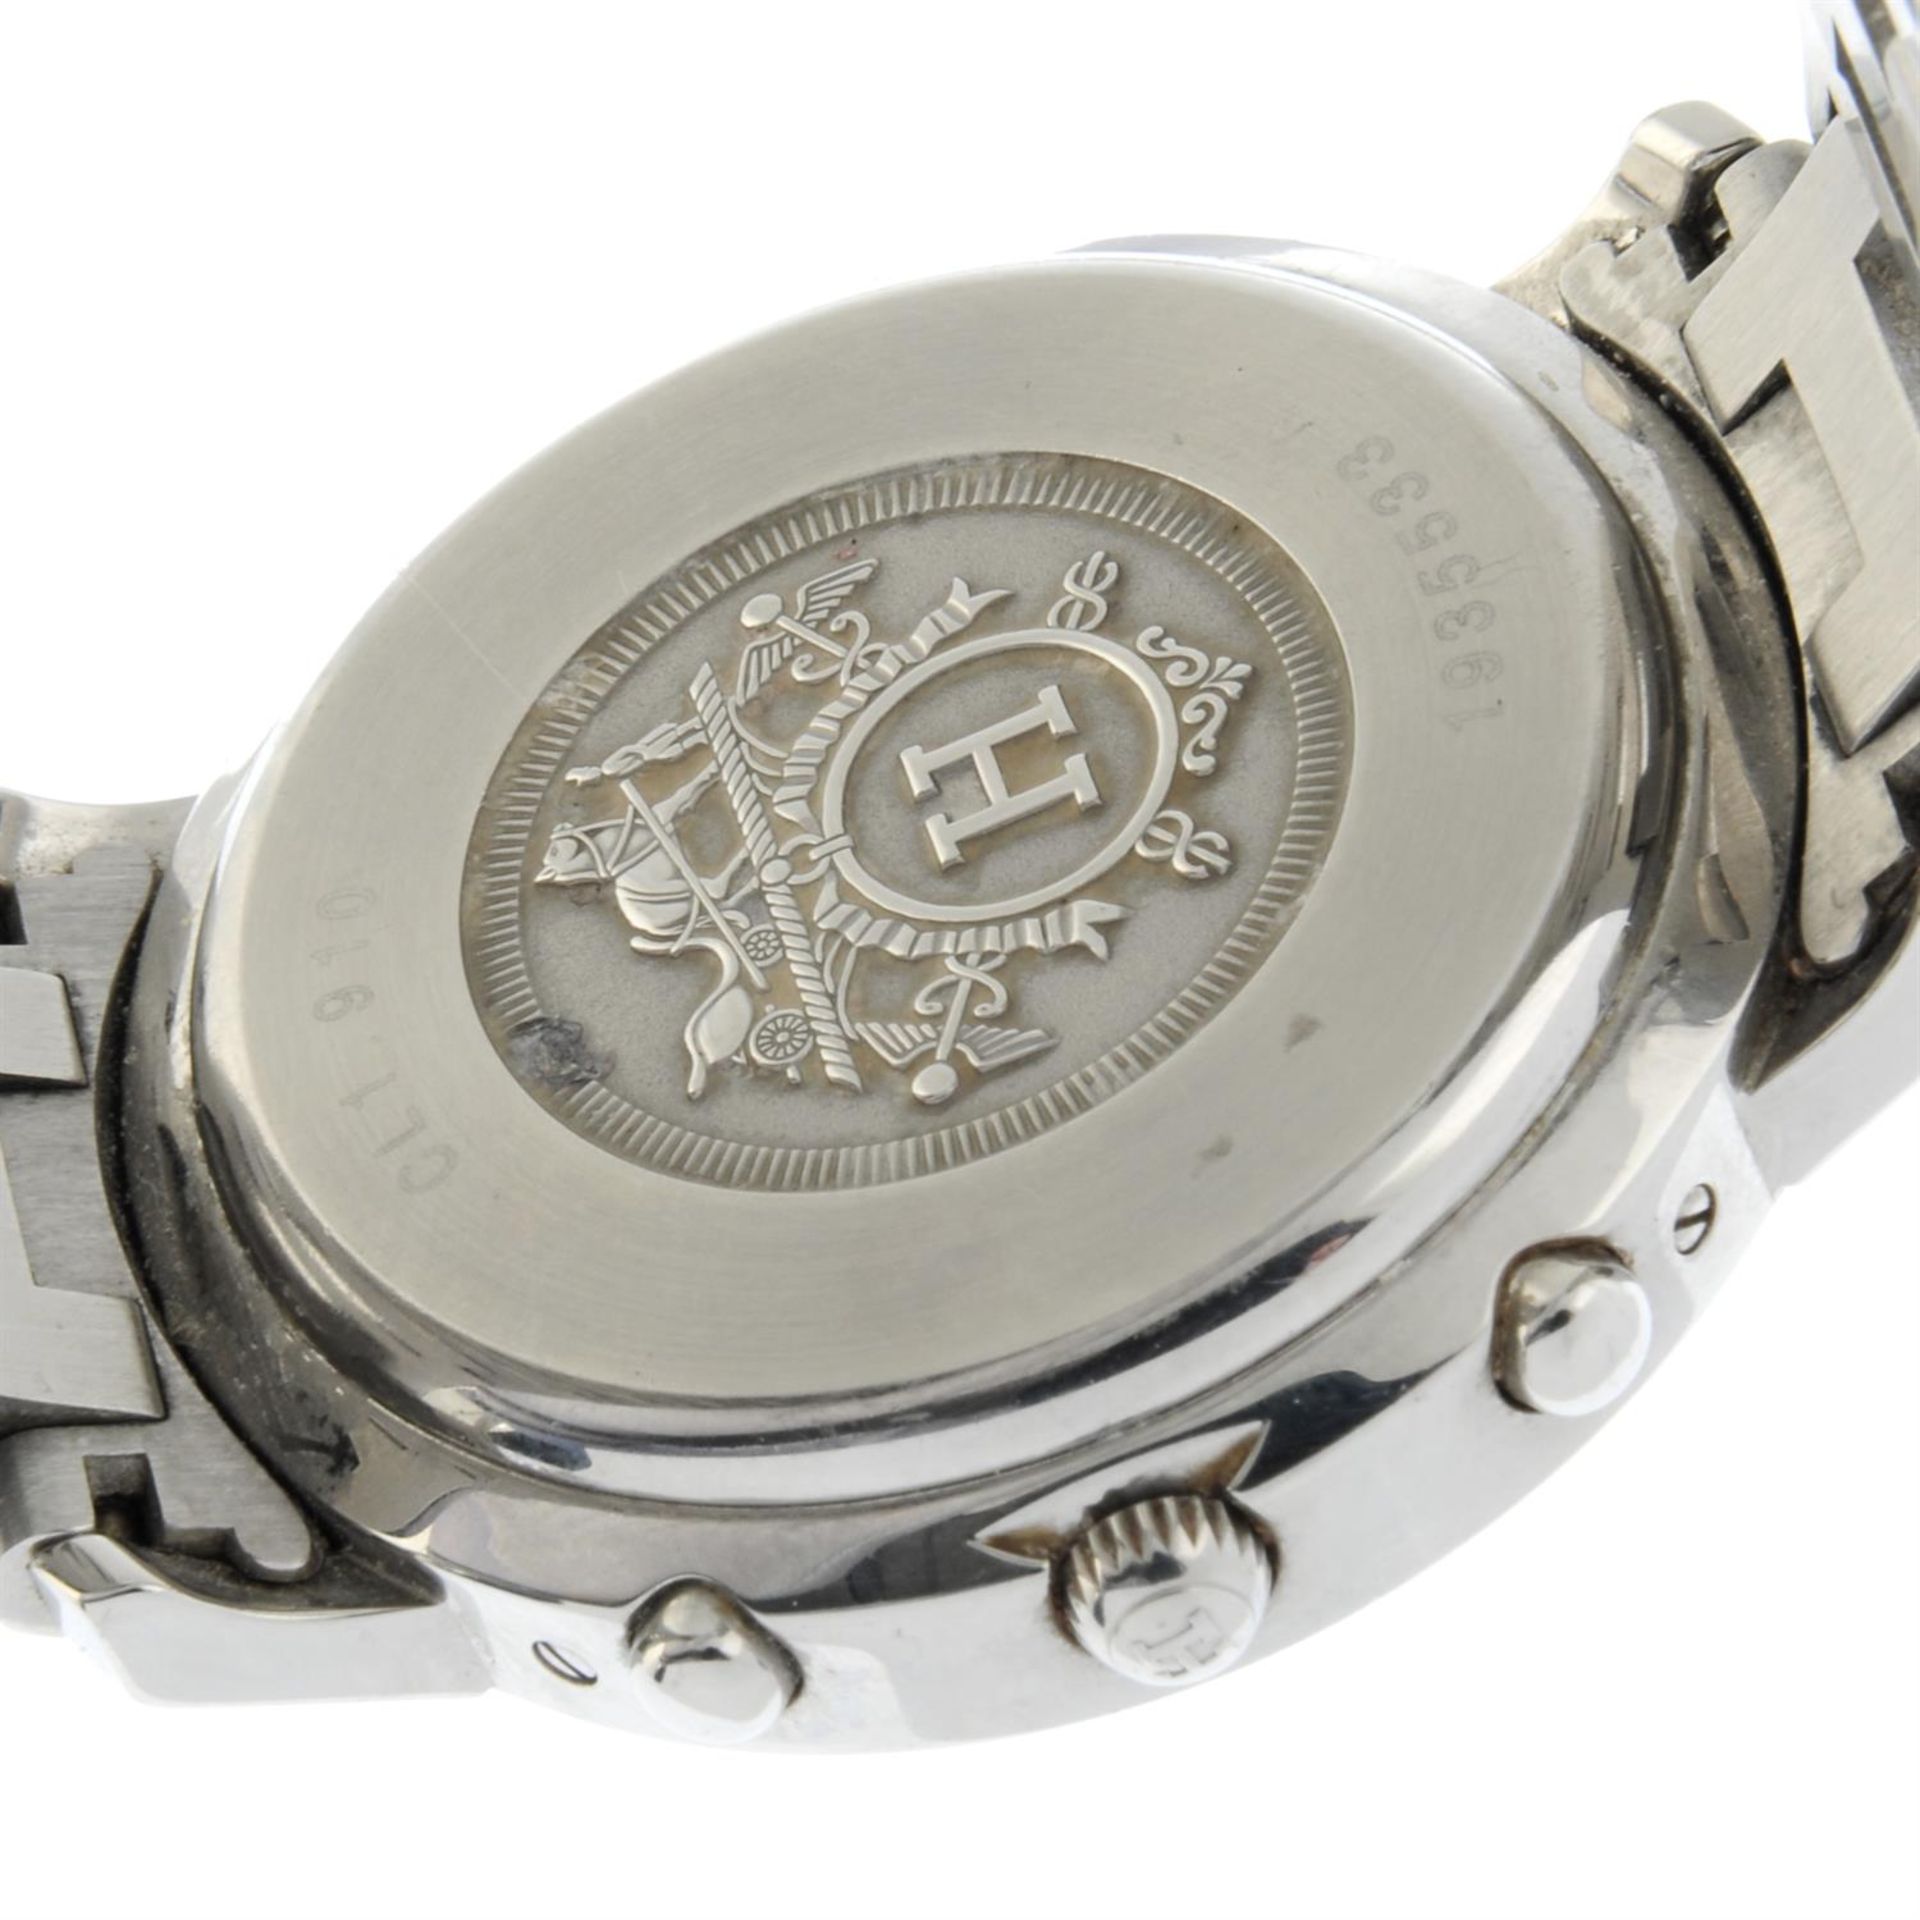 Hermes - a Clipper chronograph watch, 38mm. - Bild 4 aus 5